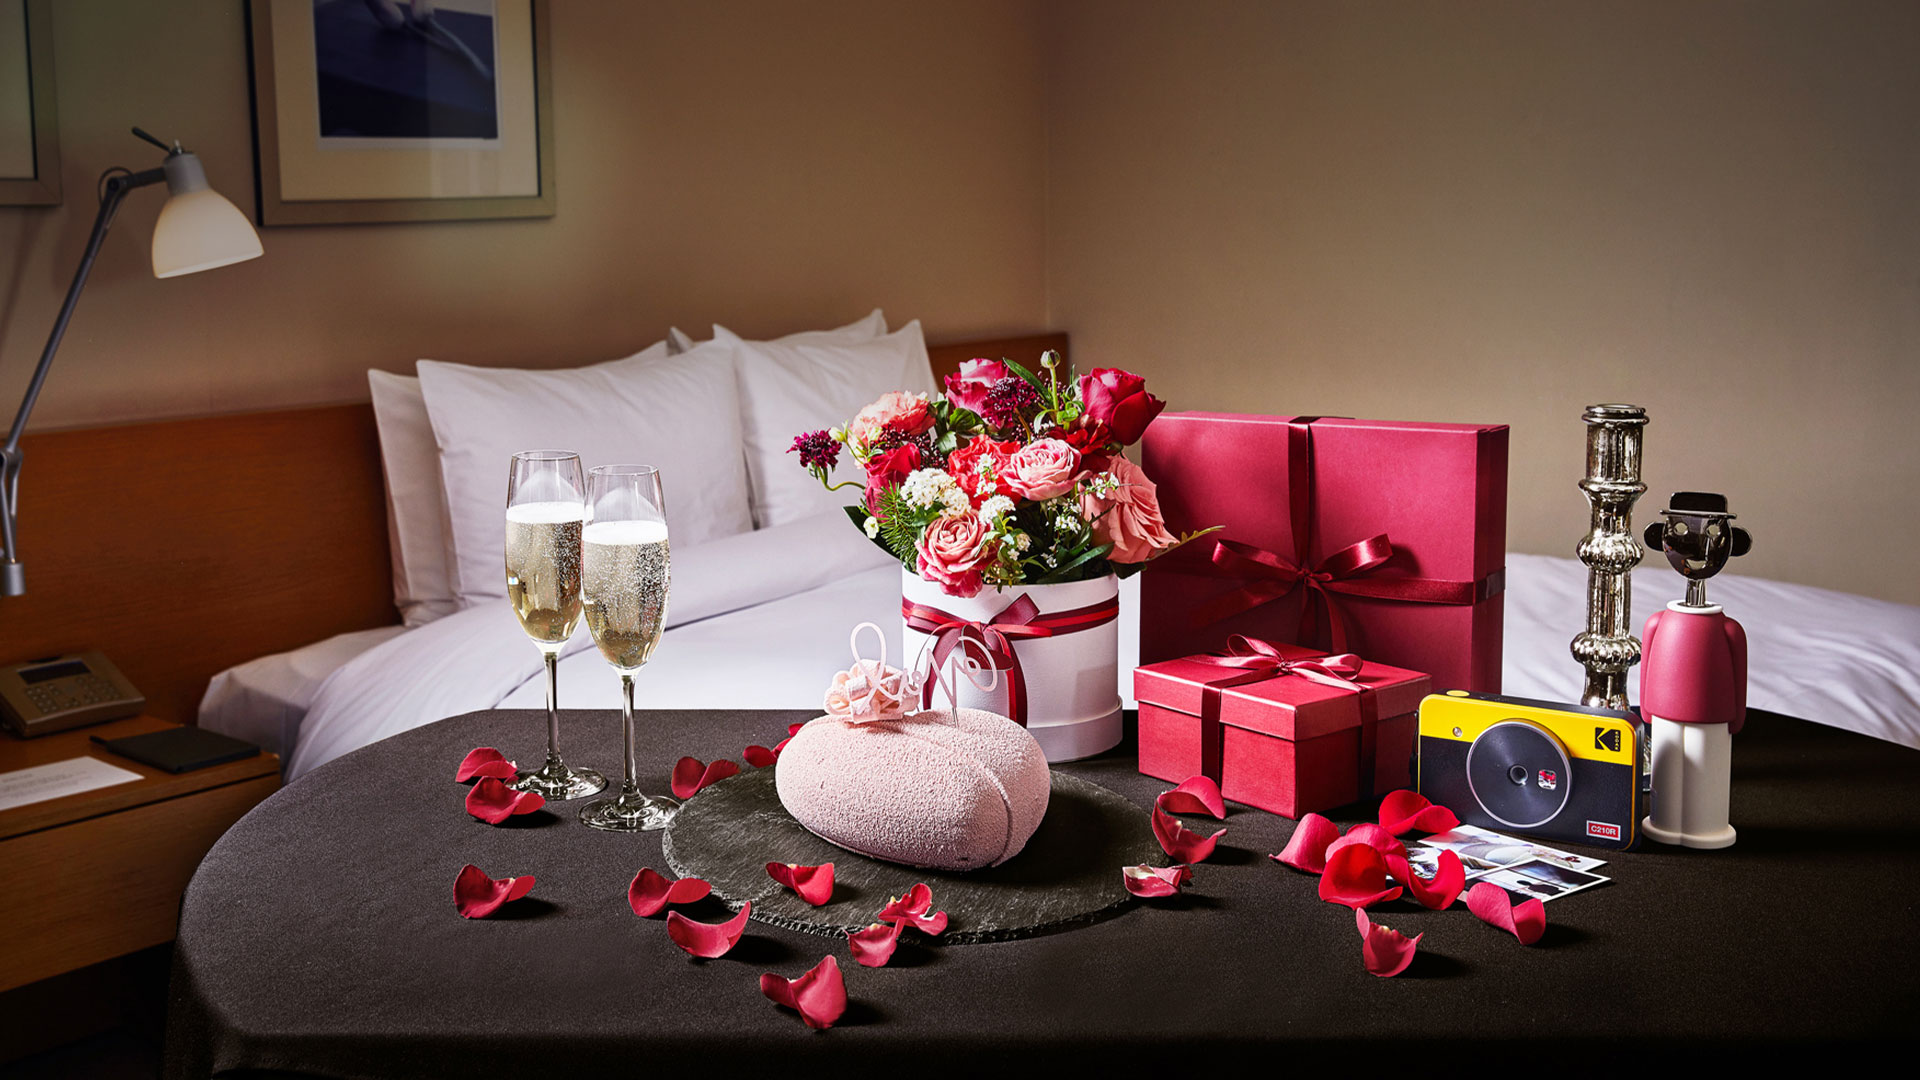 발렌타인 패키지 호텔 객실 내부가 꽃, 와인, 선물 등과 함께 아름답게 꾸며진 모습